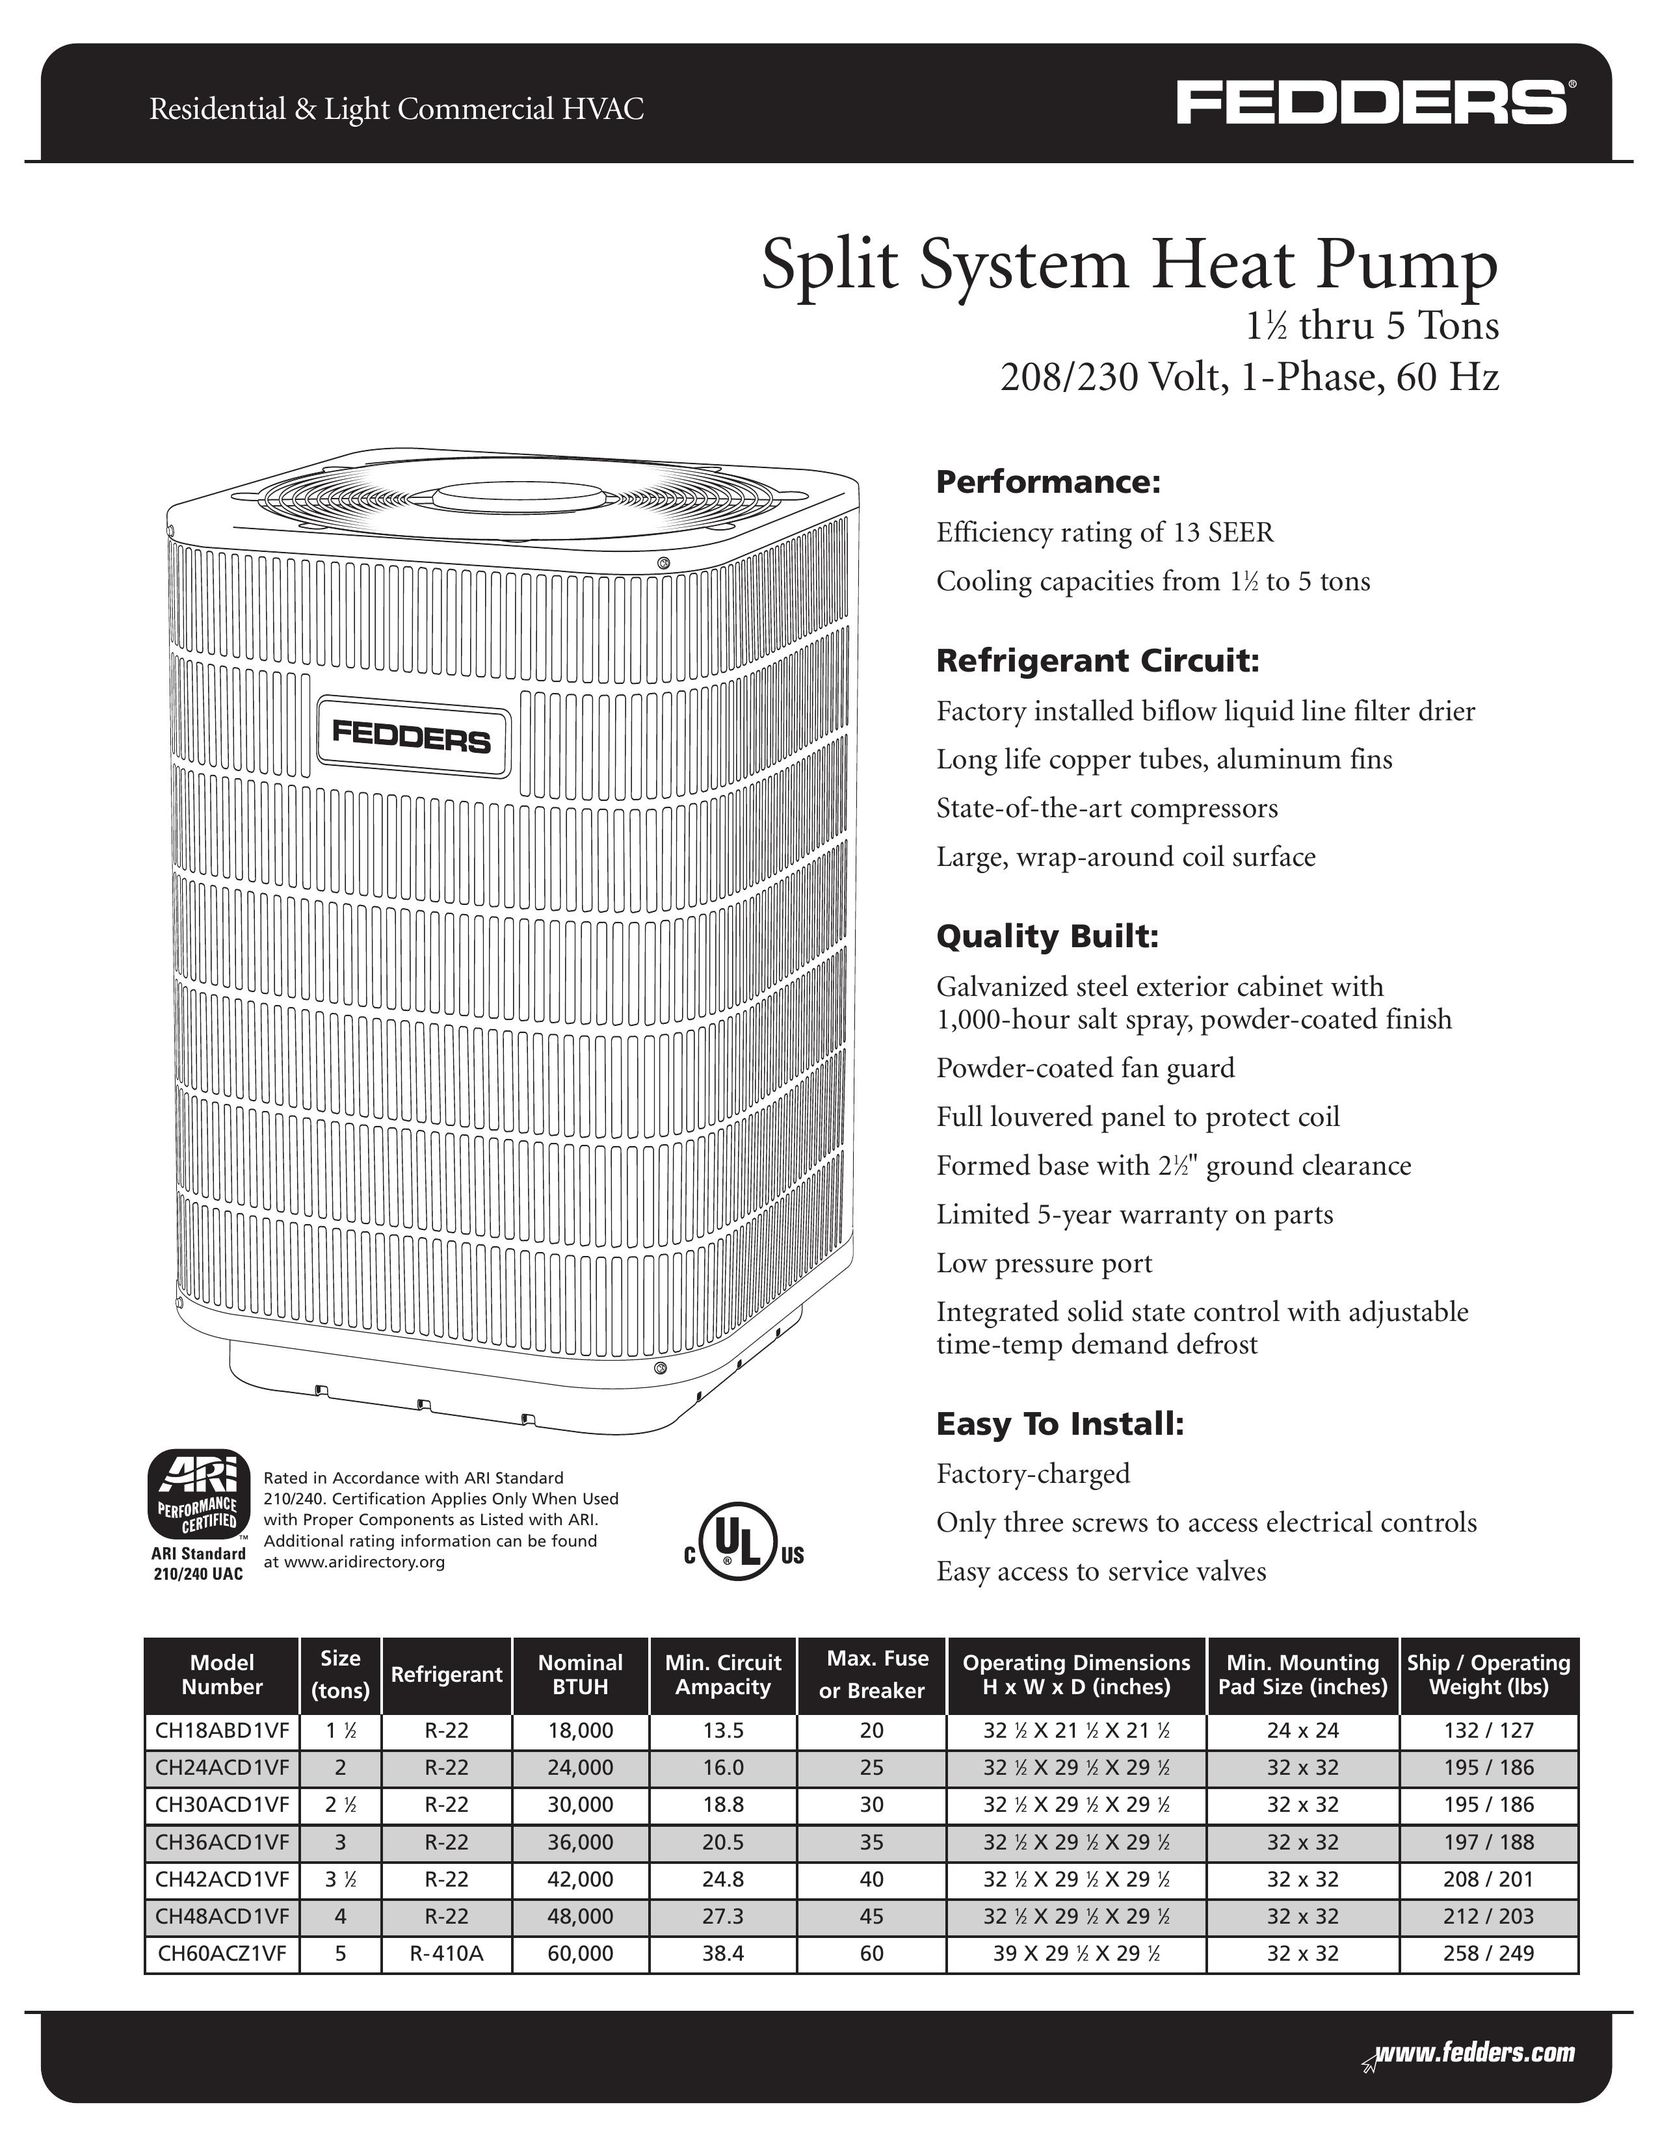 Fedders CH42ACD1VF Heat Pump User Manual